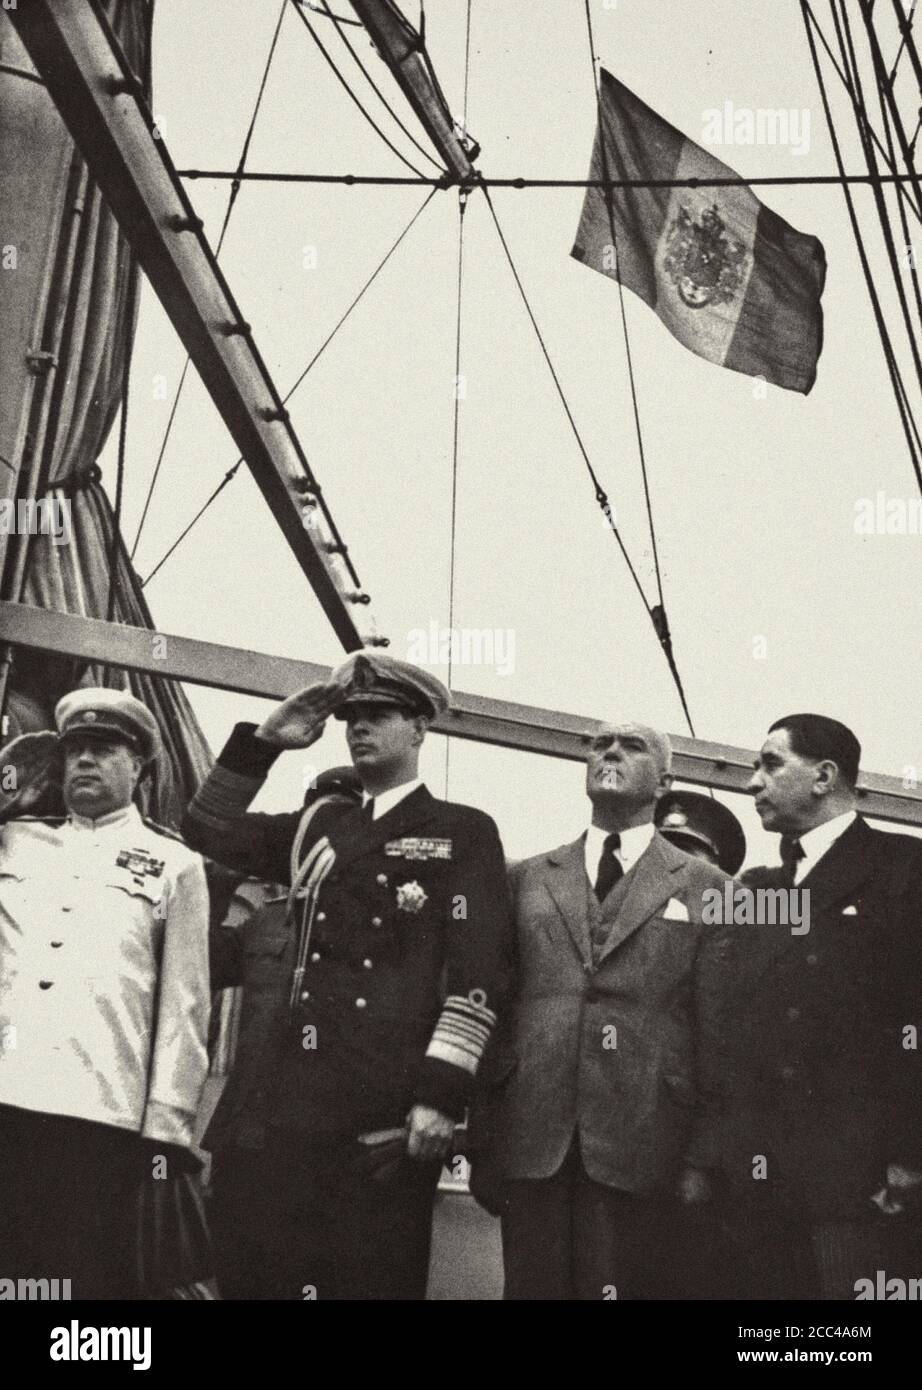 König von Rumänien Mihai I. mit Marschall der Sowjetunion Fedor Tolbukhin auf dem Deck des Schiffes. Rumänien. 1945 Stockfoto